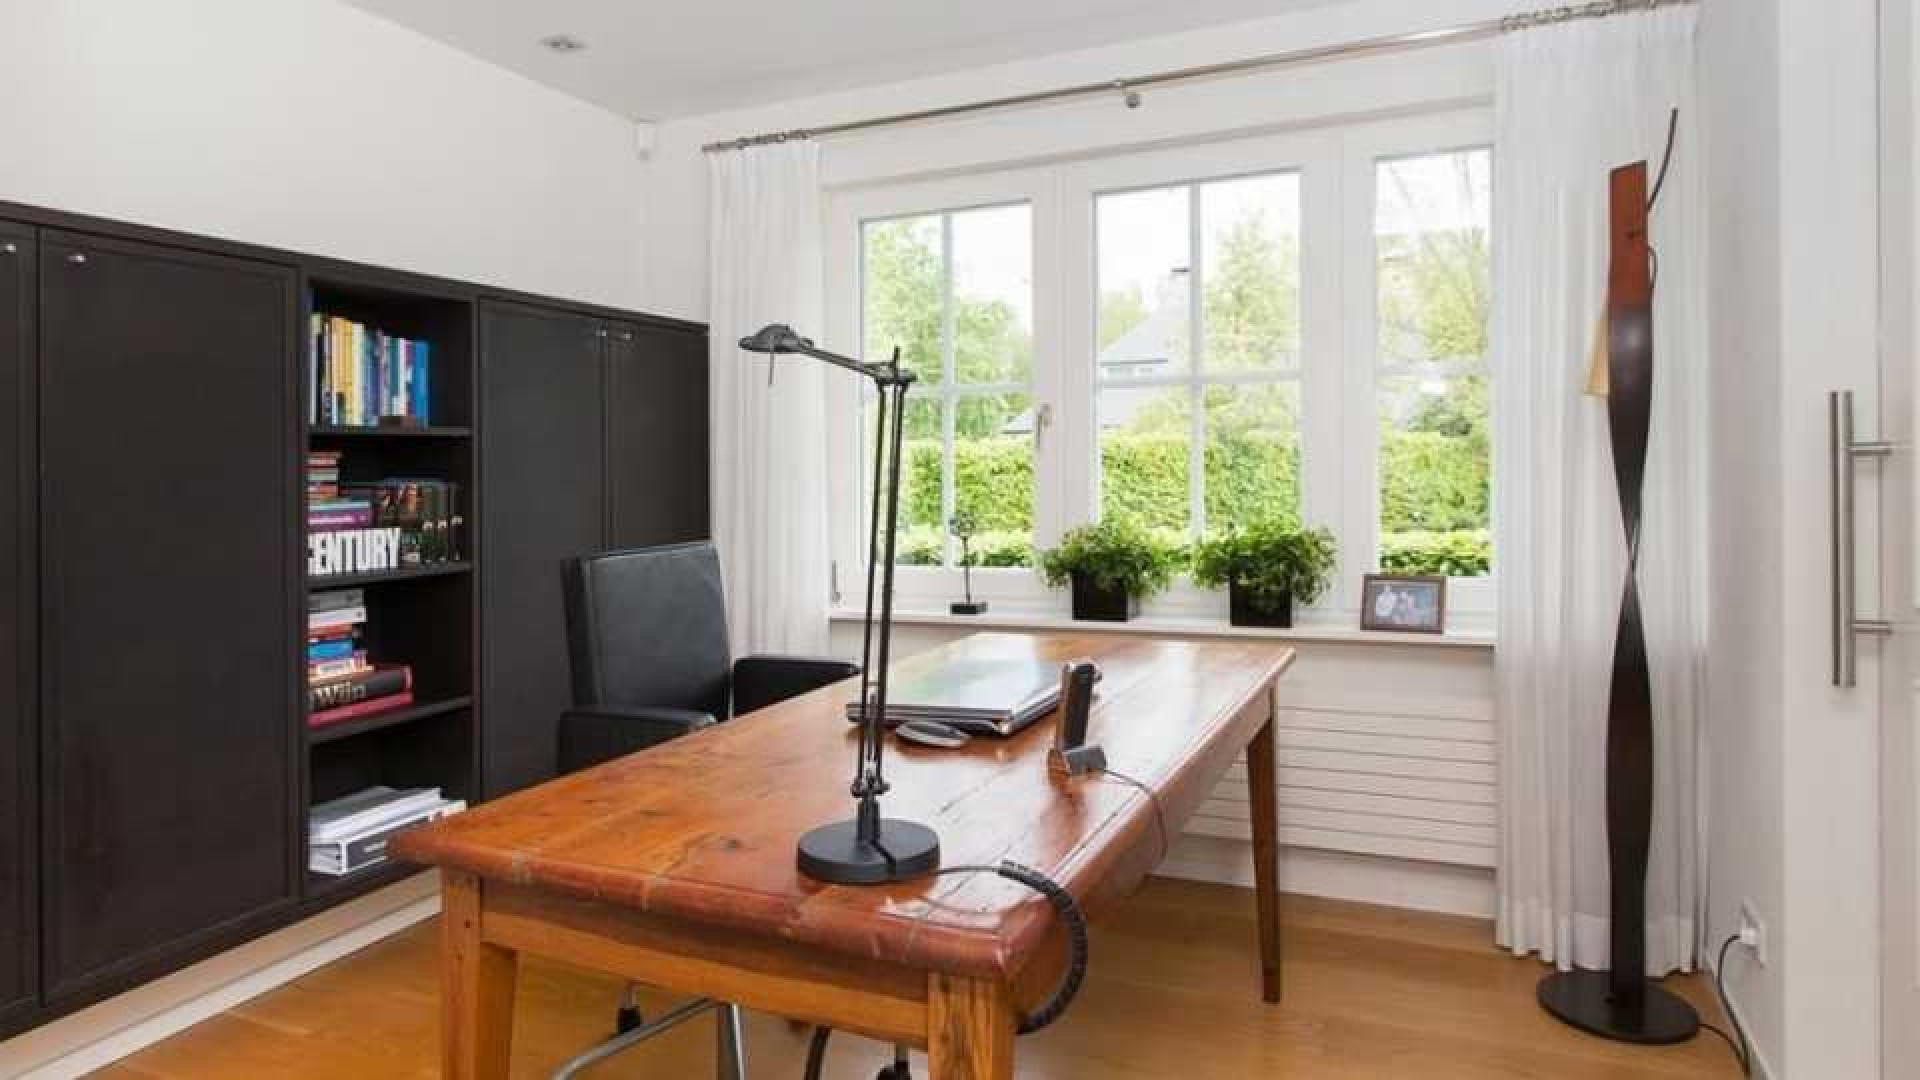 Oud premier Jan Peter Balkenende verkoopt zijn huis aan de buren. Zie foto's